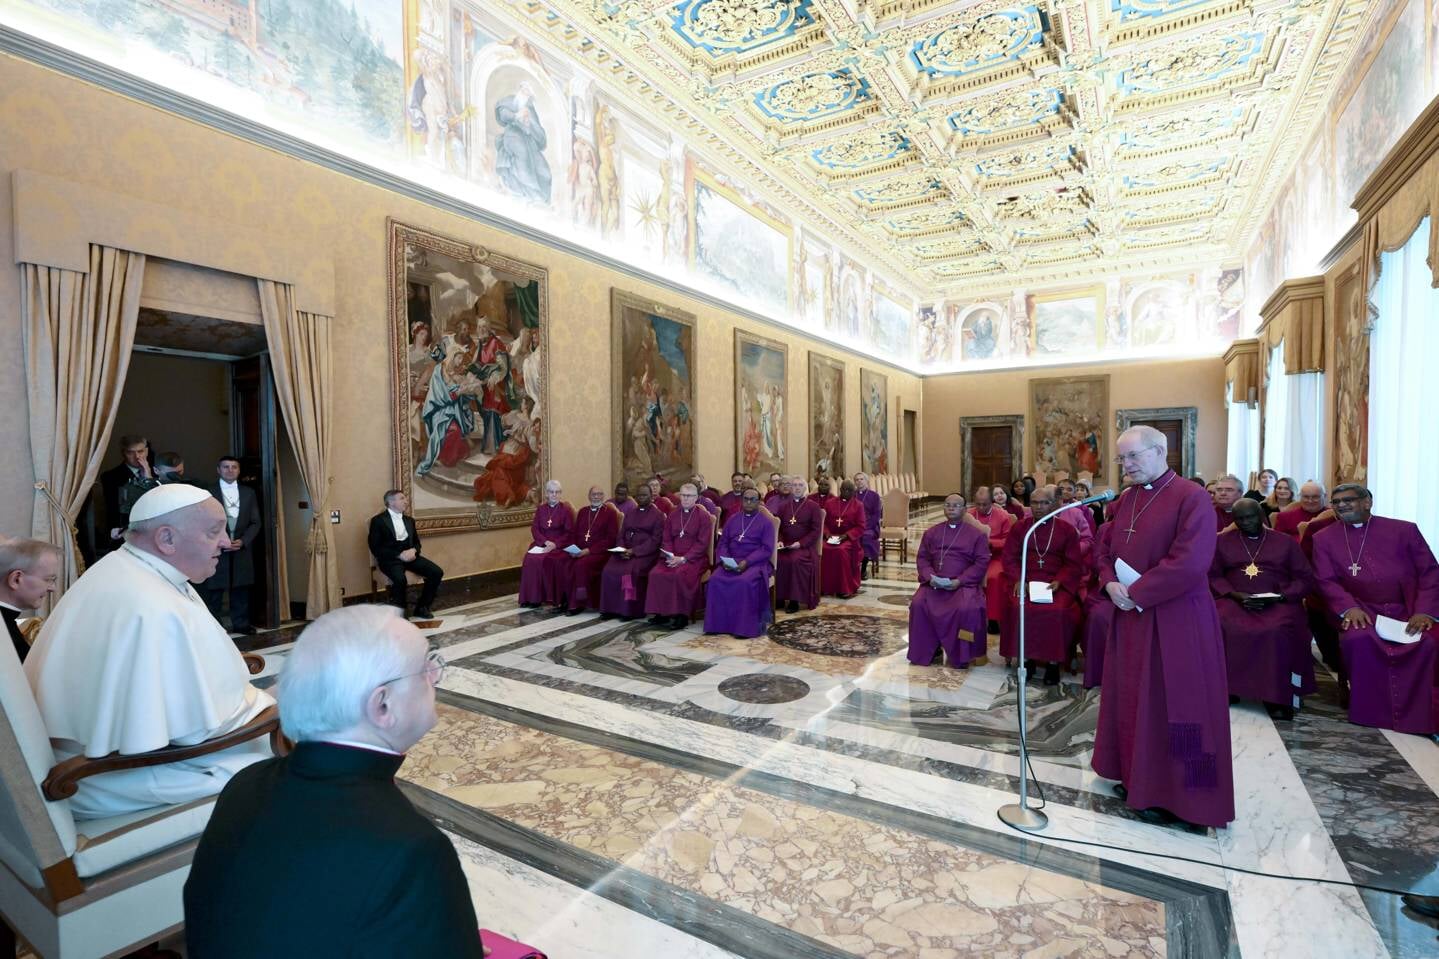 De paus had woensdag een ontmoeting van een uur met anglicaanse kerkleiders. Onenigheid in de kerk is er altijd geweest, zei hij, al vanaf het bijbelboek Handelingen.